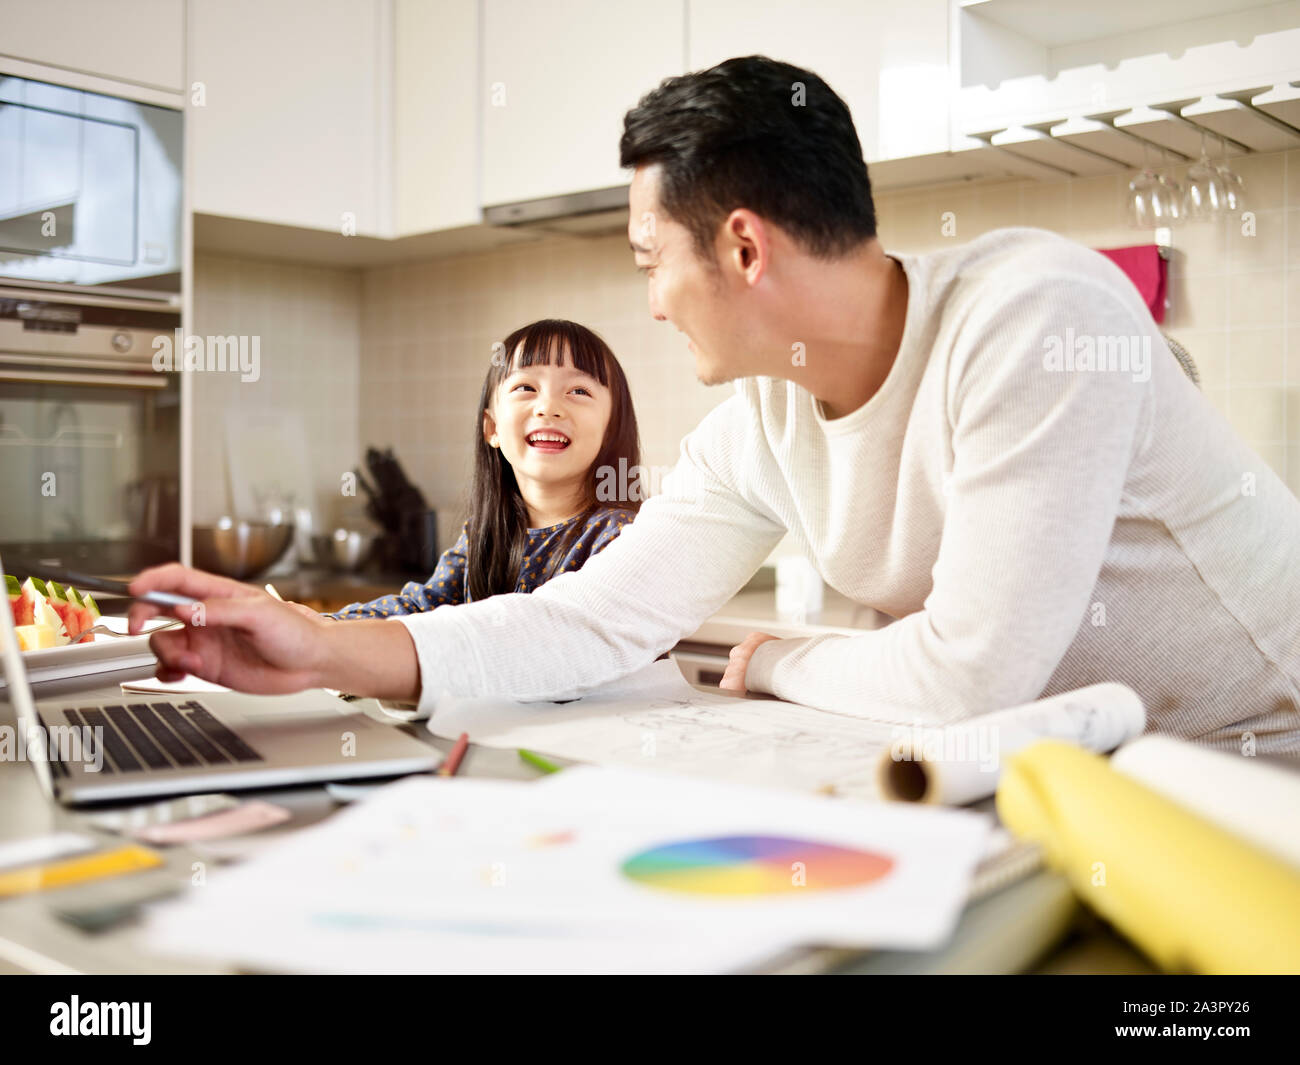 Giovane uomo asiatico free lance designer padre lavora a casa mentre si prende cura della figlia. Foto Stock